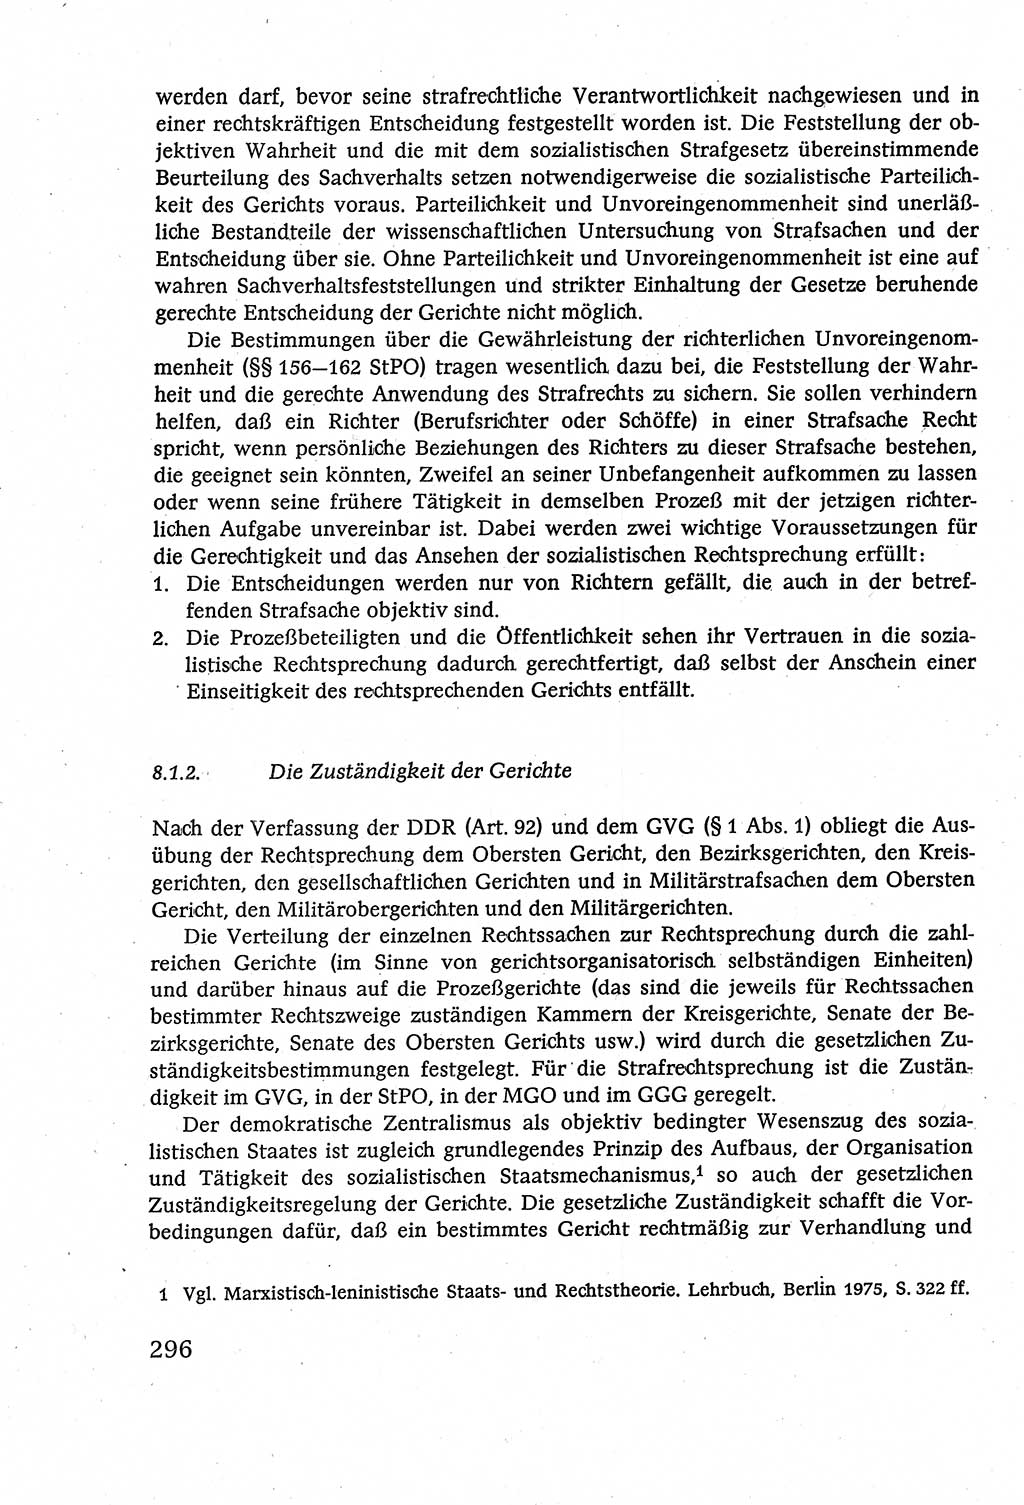 Strafverfahrensrecht [Deutsche Demokratische Republik (DDR)], Lehrbuch 1977, Seite 296 (Strafverf.-R. DDR Lb. 1977, S. 296)